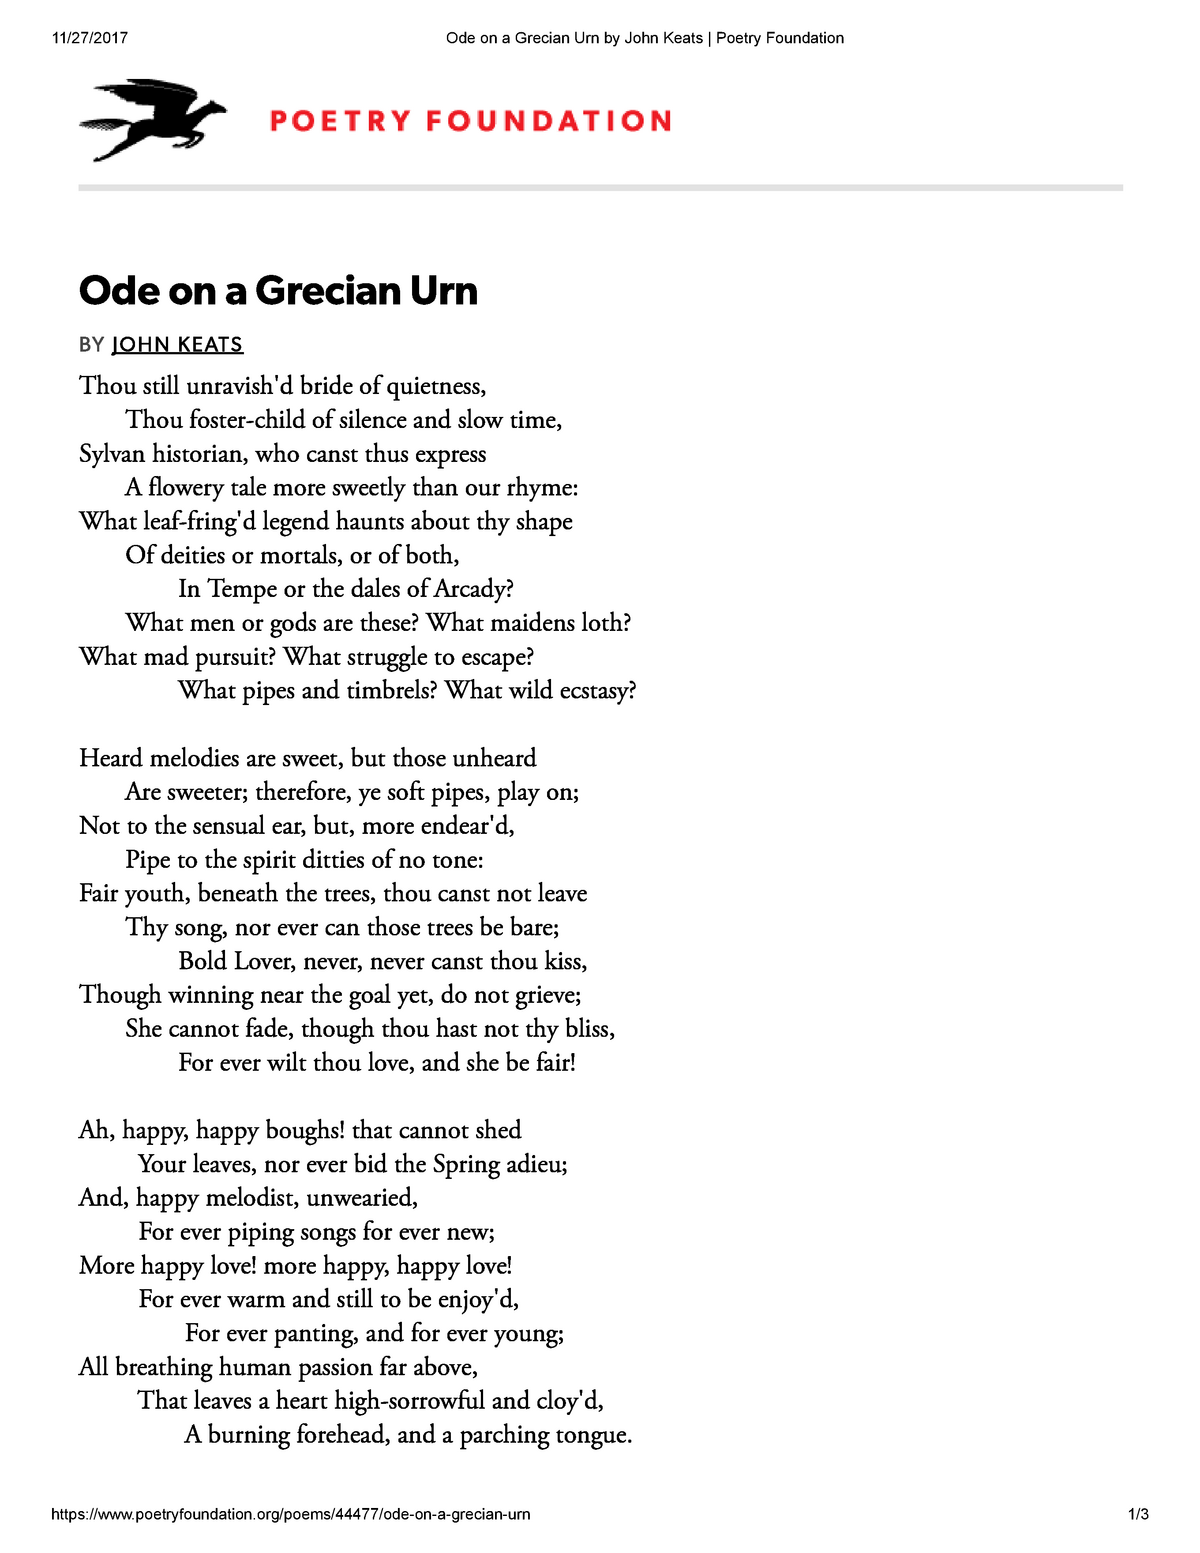 Ode on a grecian urn essay